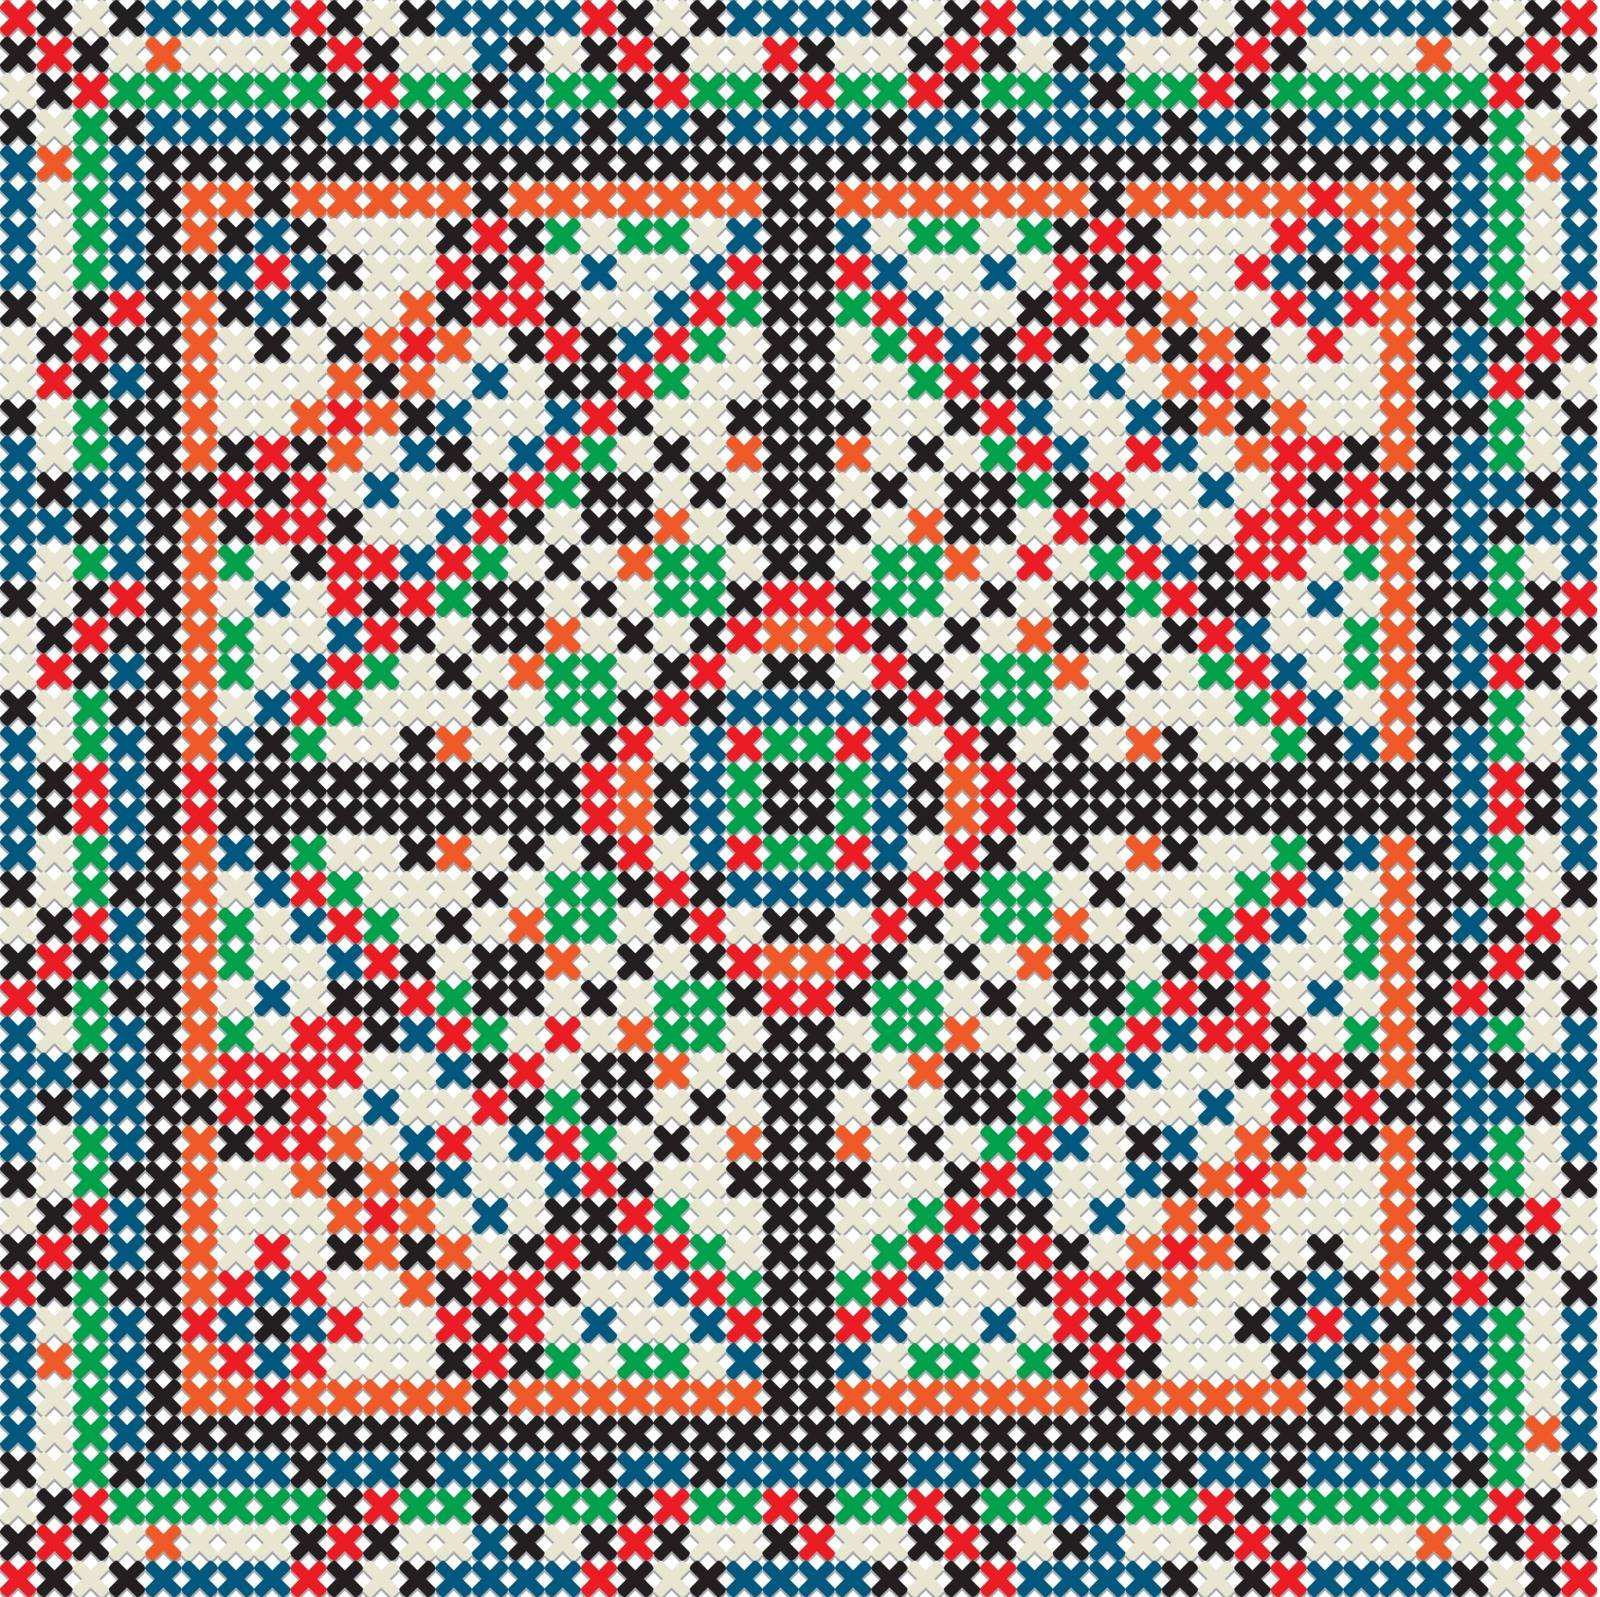 Decorative knit tile by Lirch